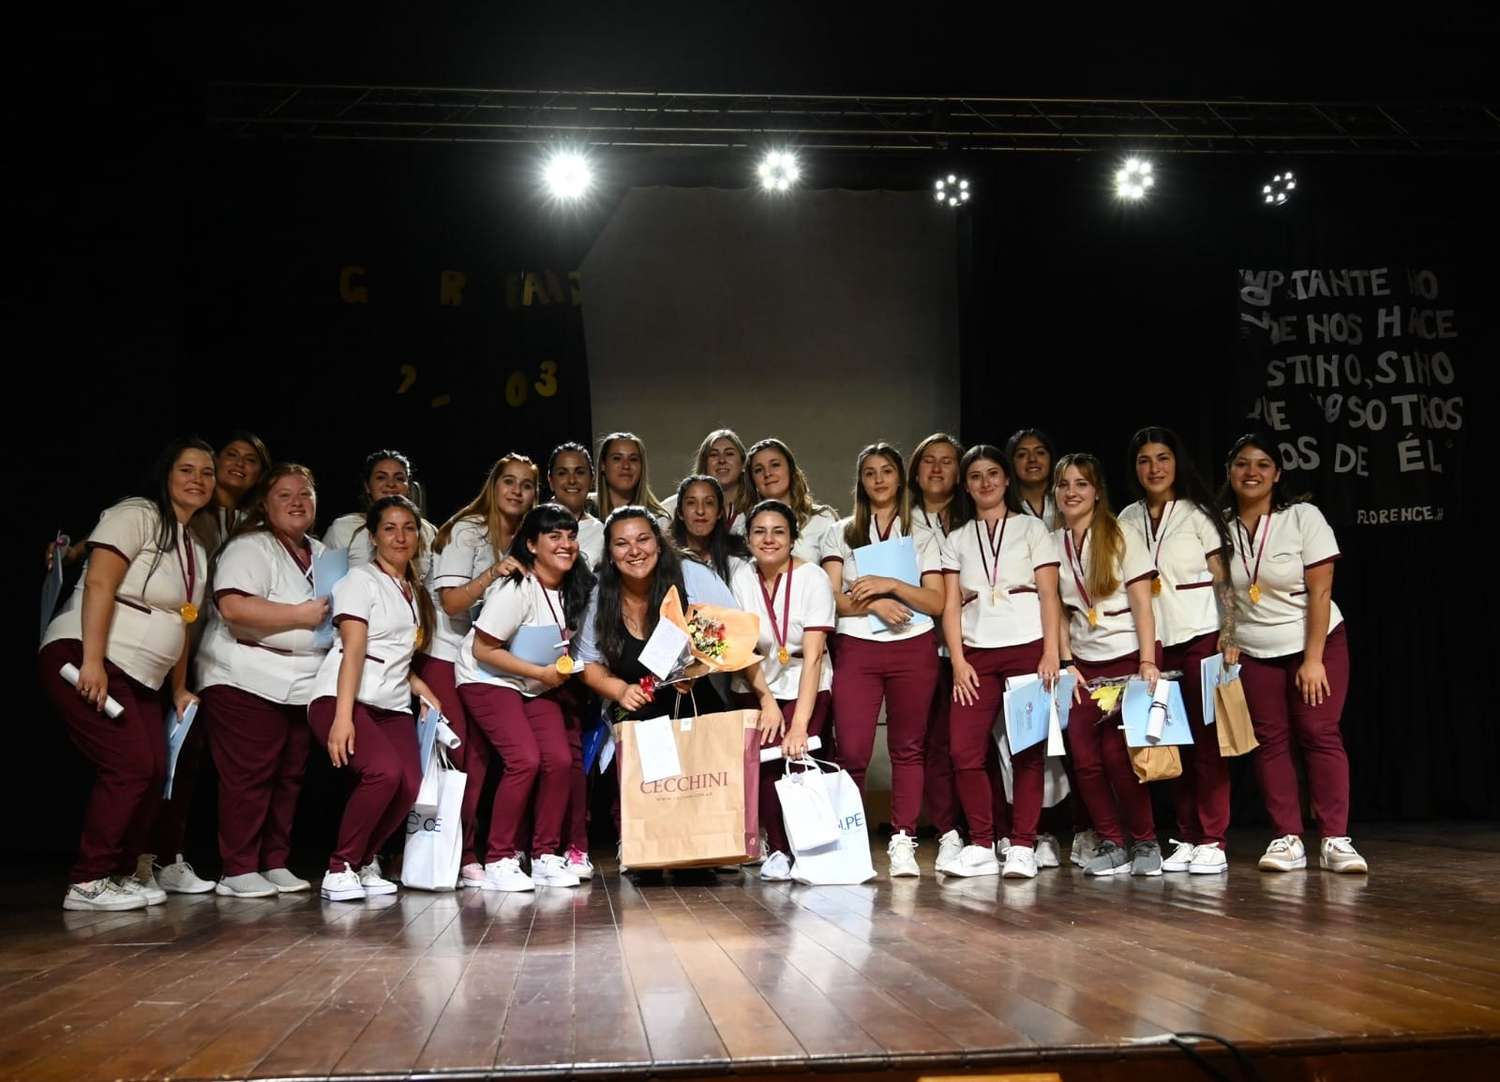 Primera promoción de enfermeras en María Teresa: “un hito” para el pueblo